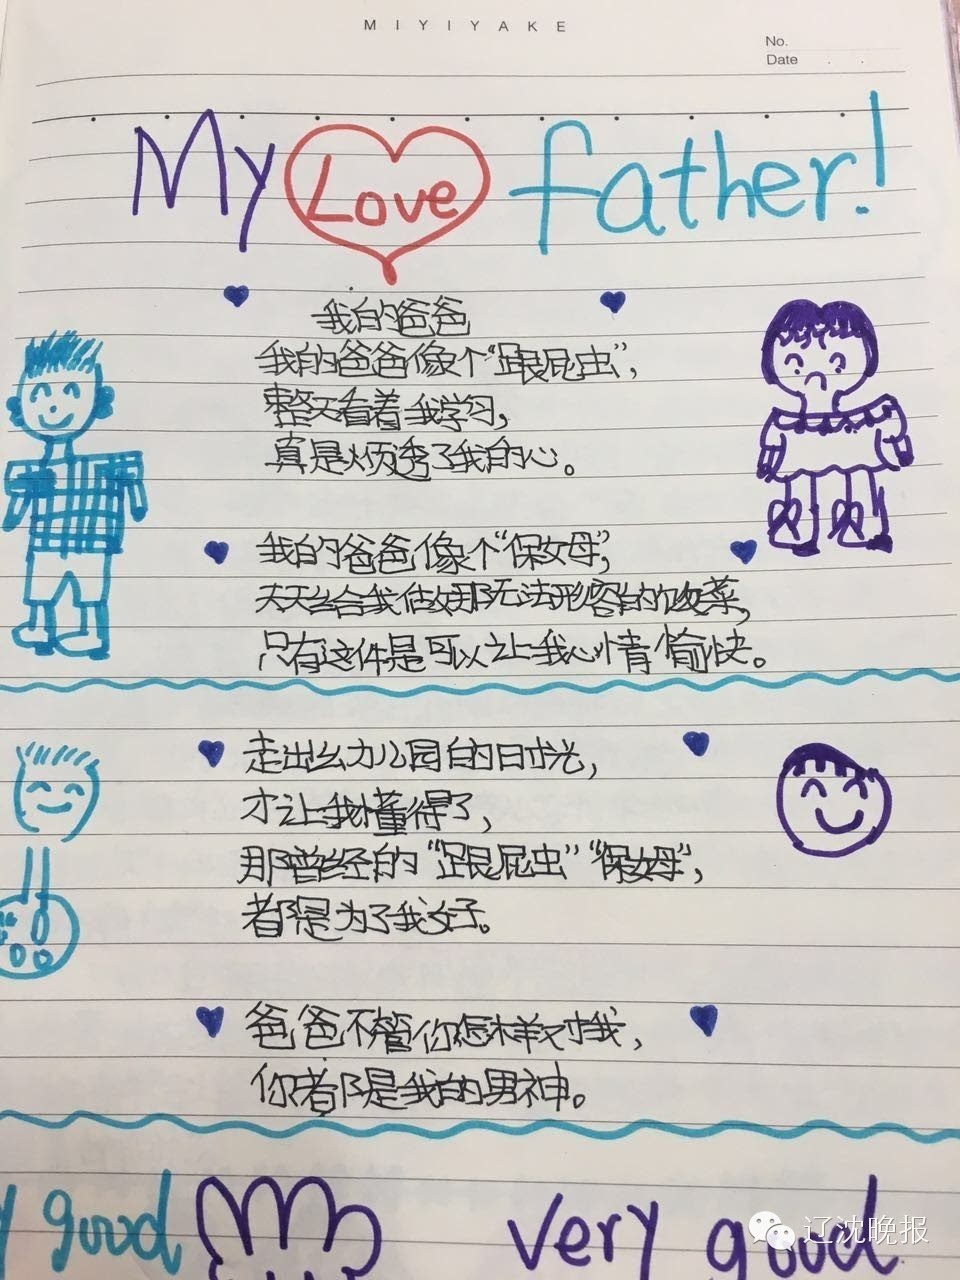 10岁孩子诗歌刷爆朋友圈:爸爸像个跟屁虫